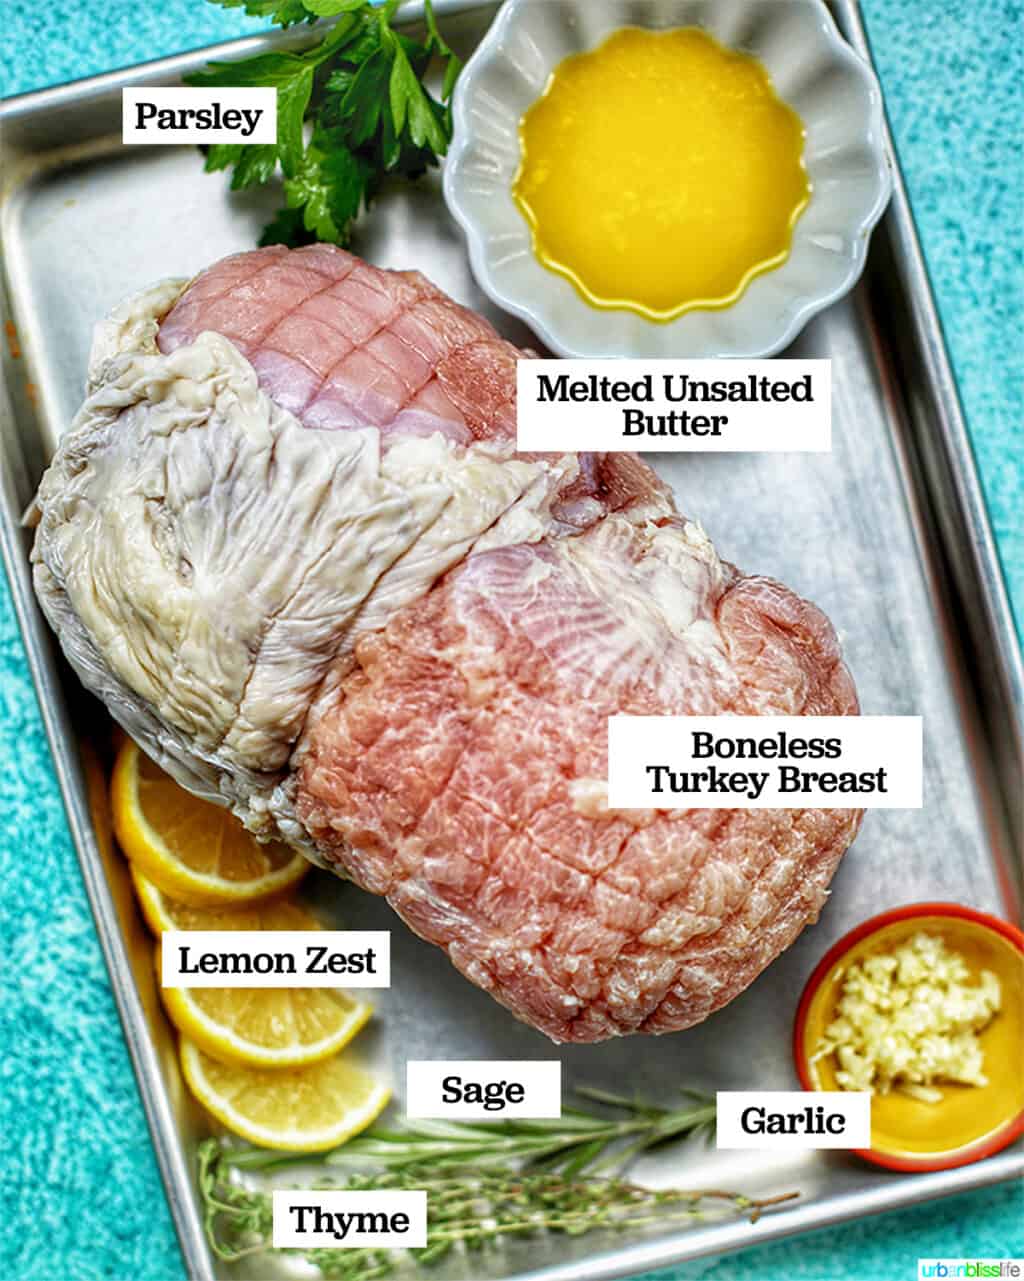 turkey breast ingredients on baking sheet against blue backdrop